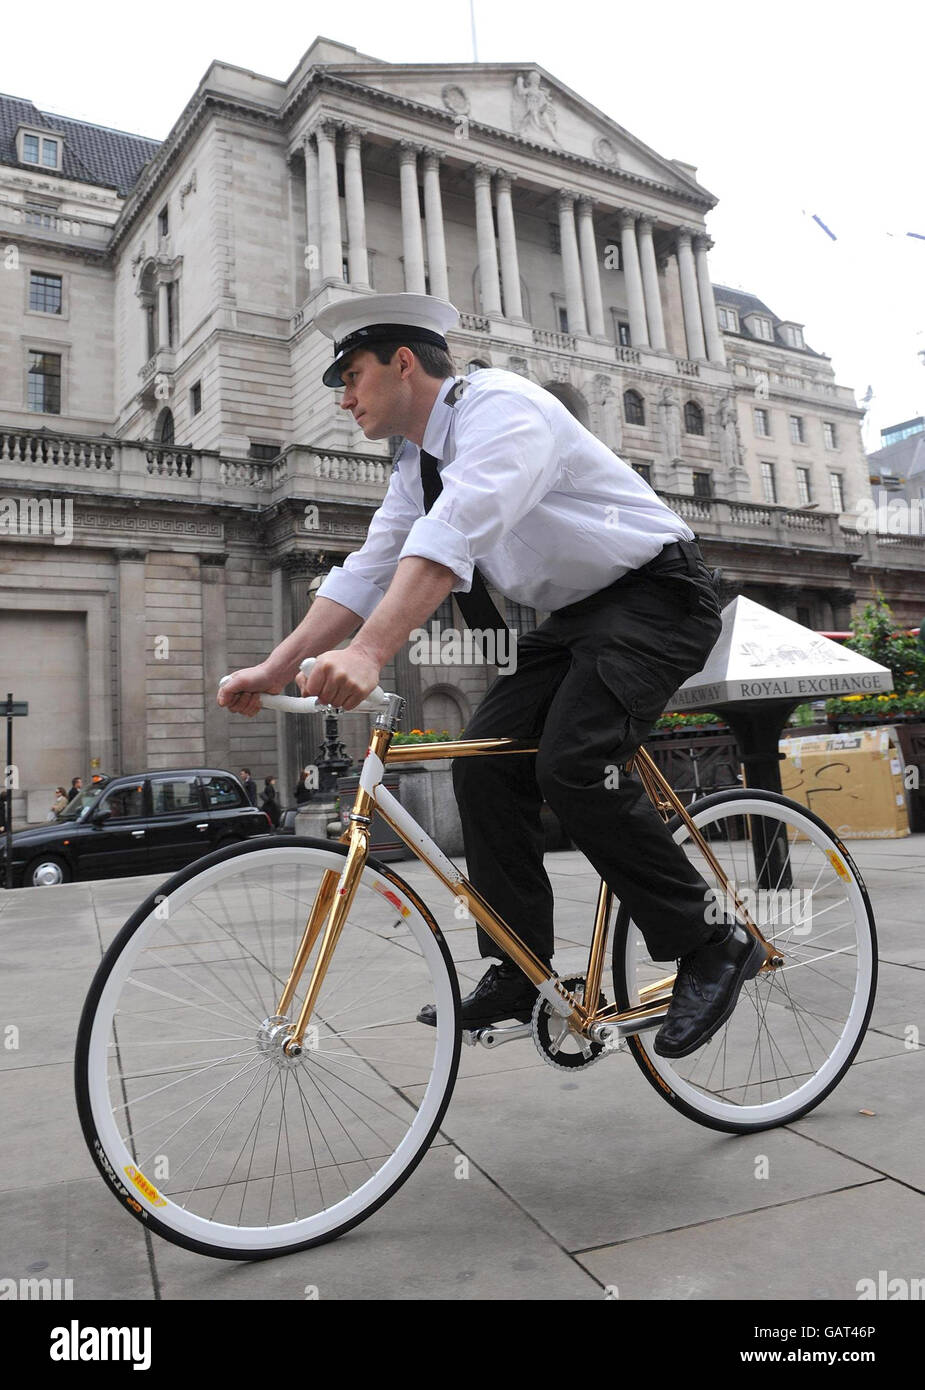 Yannick Read muestra una bicicleta enmarcada en oro 24ct a la venta para 9500. Encargada por la Asociación de Transporte Ambiental, la bicicleta tiene el extra opcional de un guardia de seguridad cuando se deja en público ya que las bicicletas no pueden ser aseguradas sobre el vale de 4000. Londres. Foto de stock